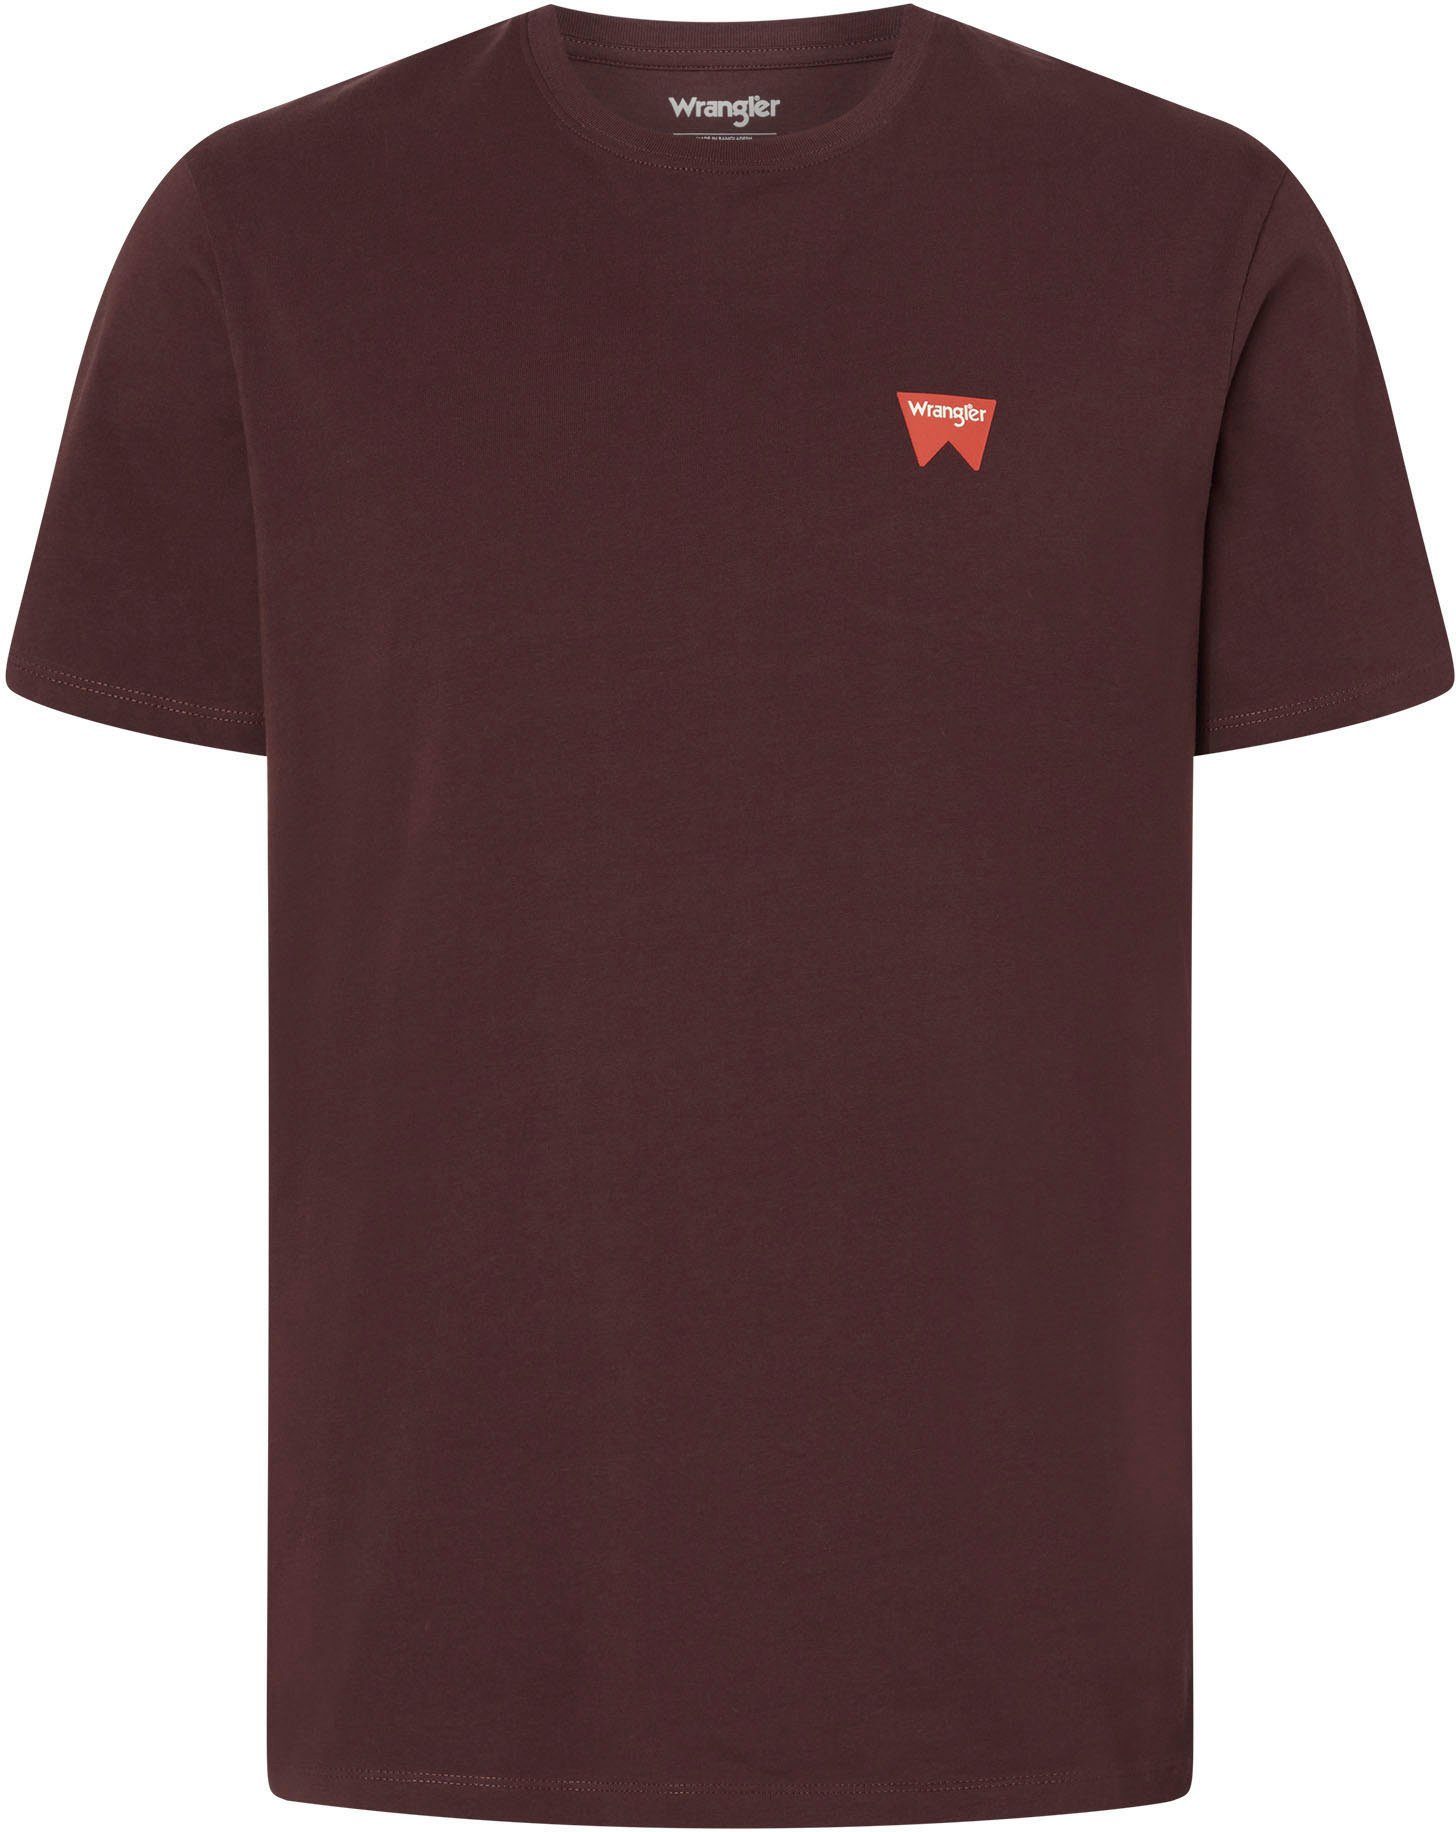 Wrangler T-Shirt aubergine